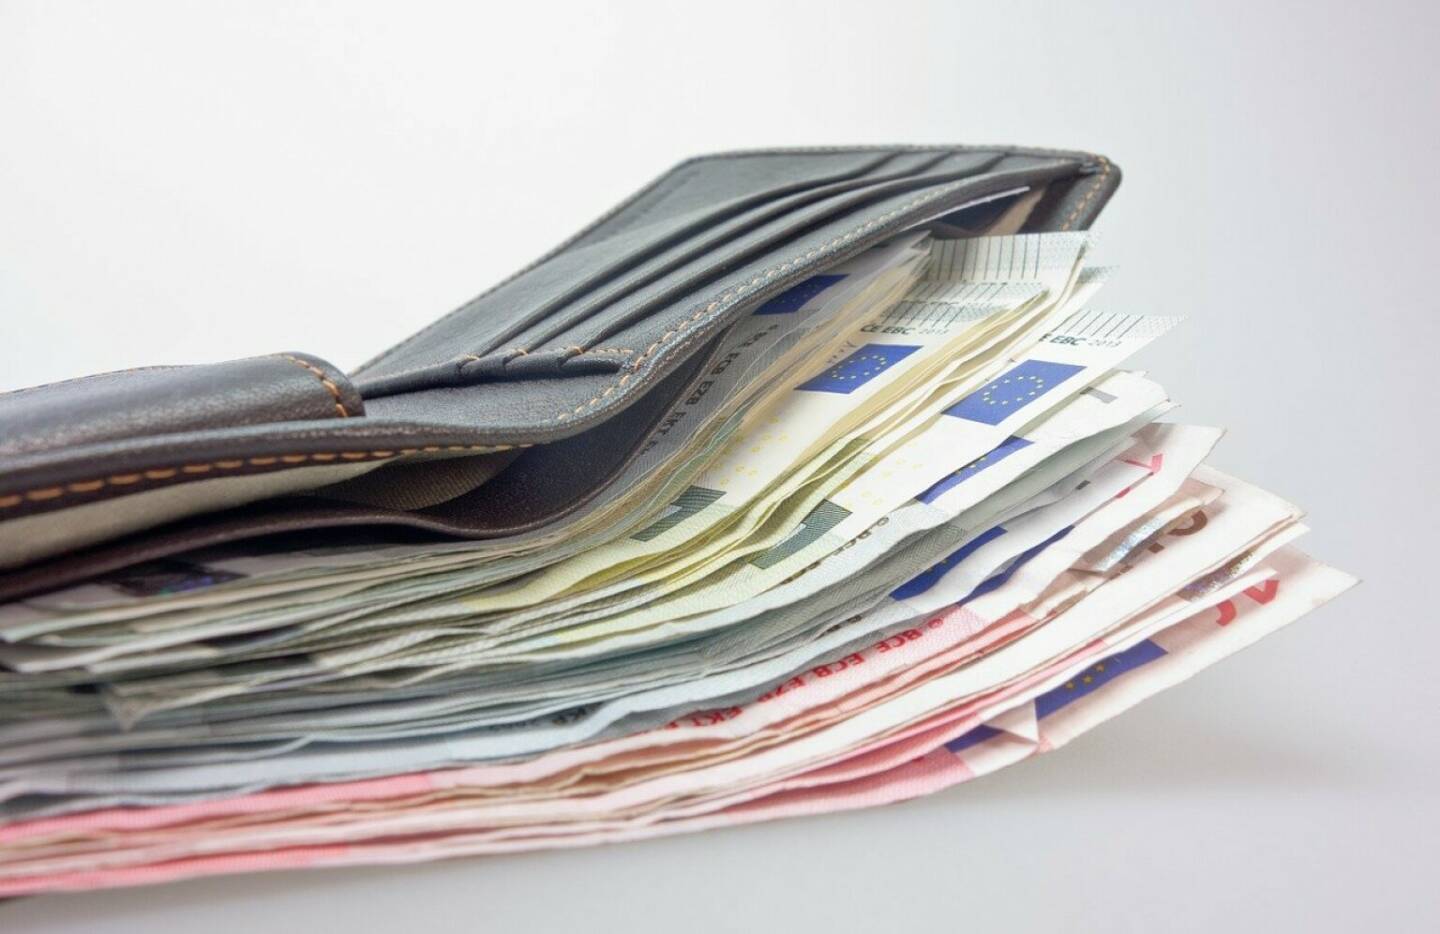 Geldbörse, Geldscheine - https://pixabay.com/de/photos/geld-geldbörse-geldscheine-euro-494163/